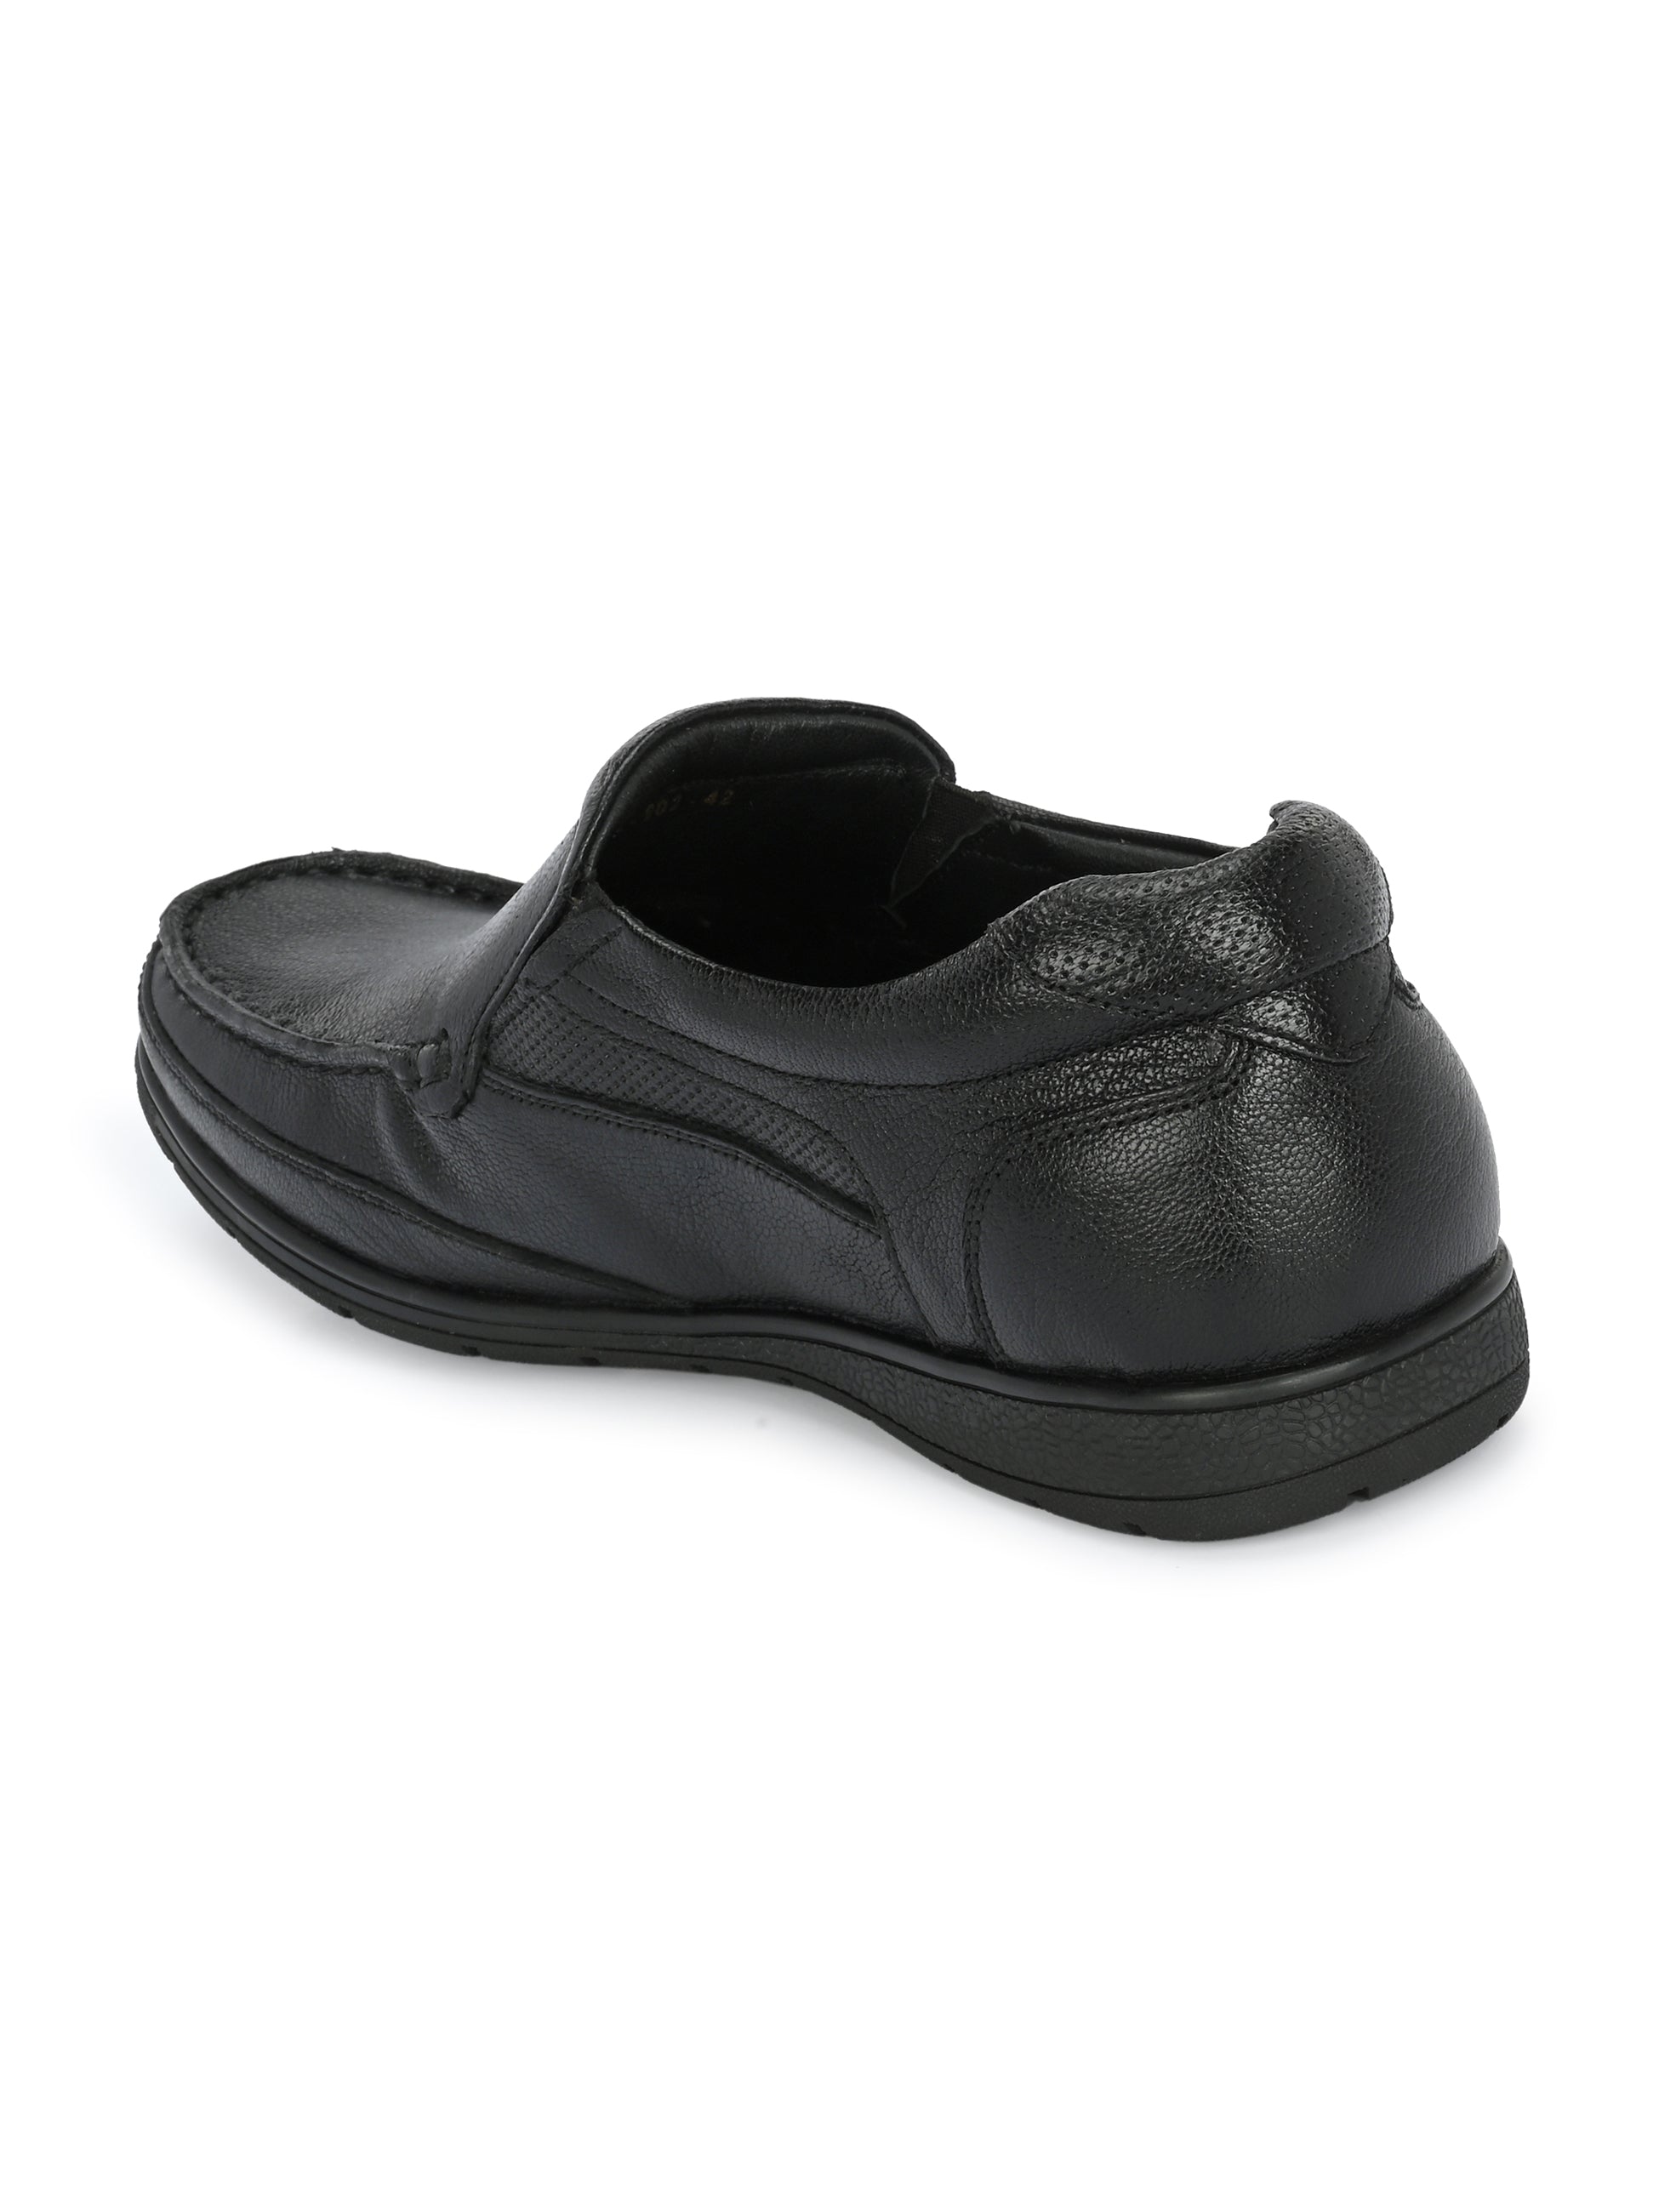 Egoss Casual Slip On Shoes For Men